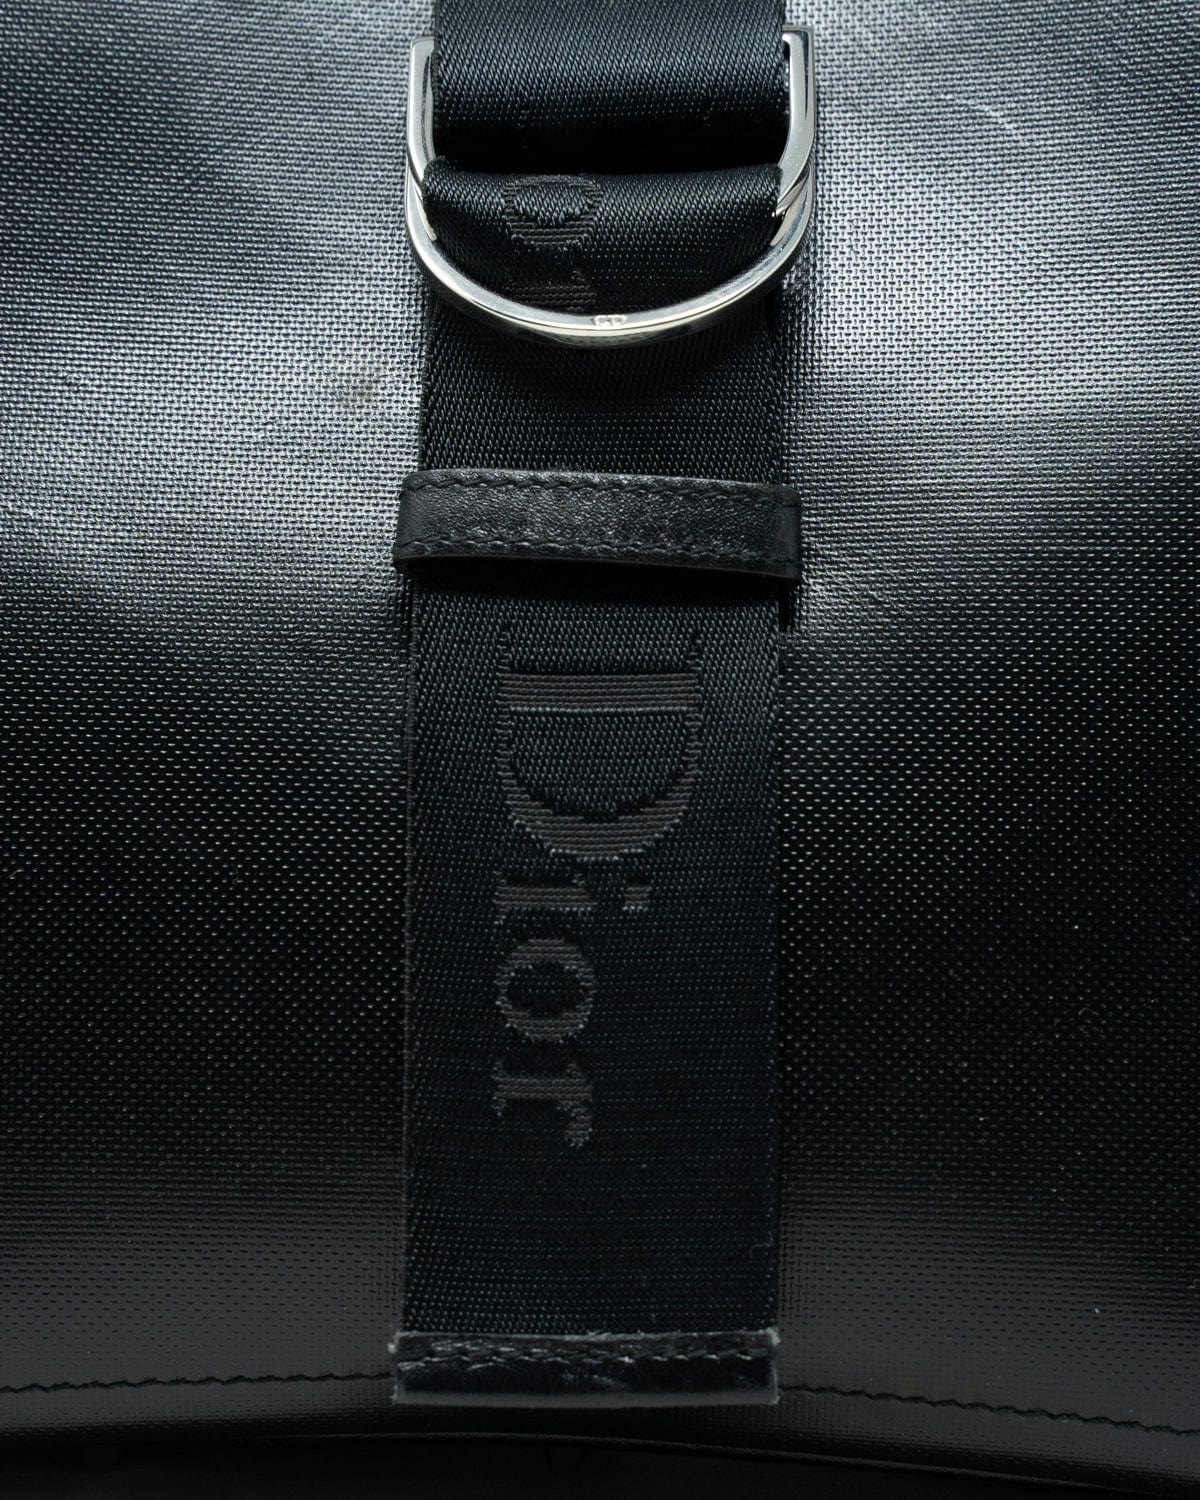 Christian Dior Christian Dior Black Leather Shoulder Bag - AGL1834